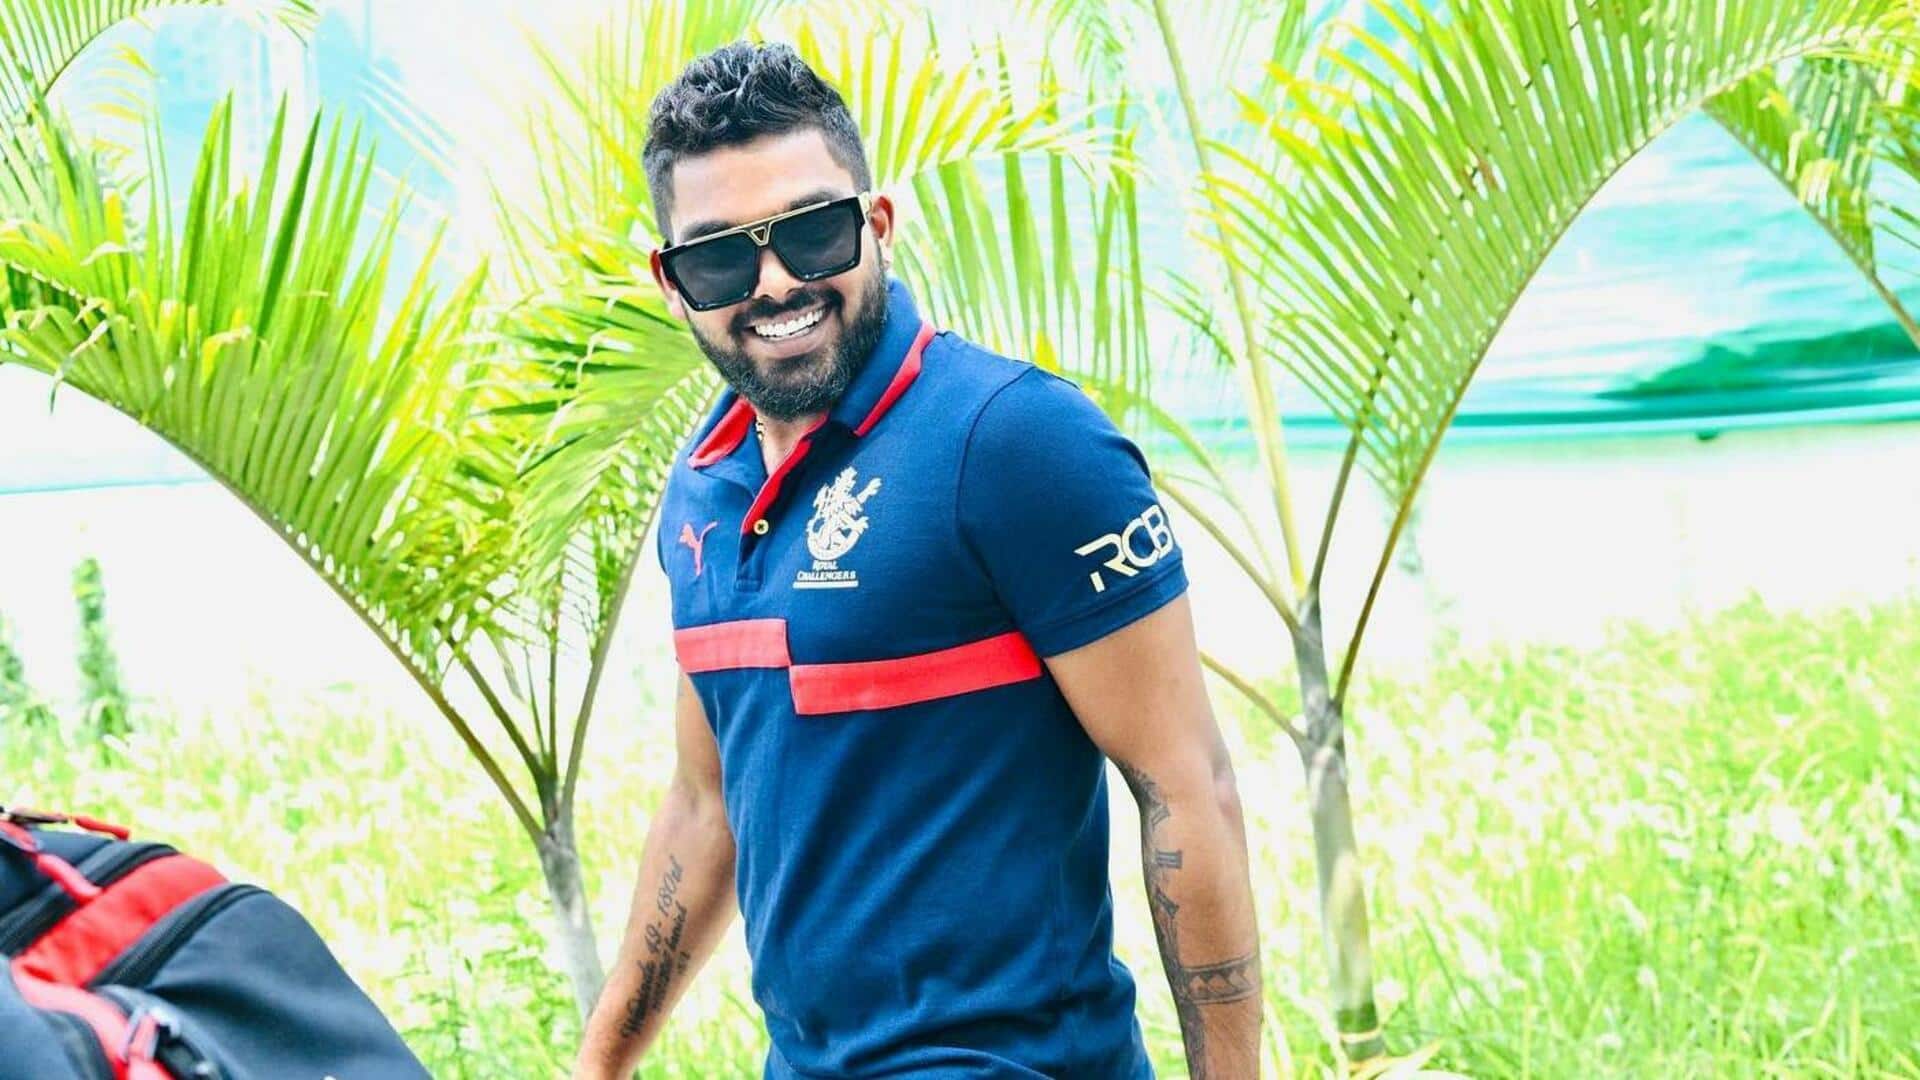 श्रीलंका के ऑलराउंडर वनिंदु हसरंगा ने की शादी, मिस कर सकते हैं IPL के शुरुआती मुकाबले